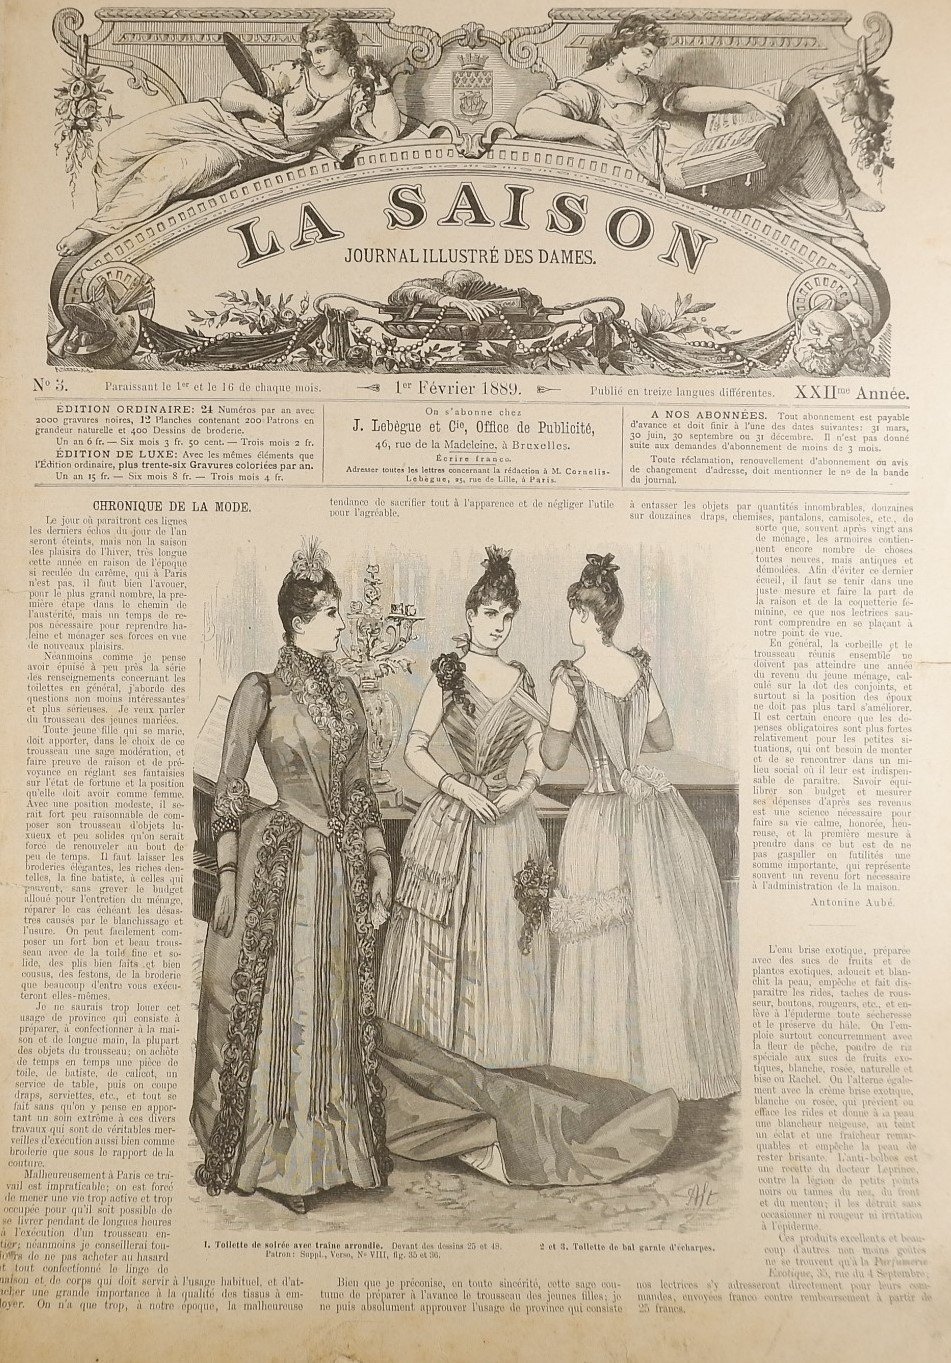 Sammlung: La Saison, Journal illustre`des dames (1889) (Volkskunde- und Freilichtmuseum Roscheider Hof RR-F)